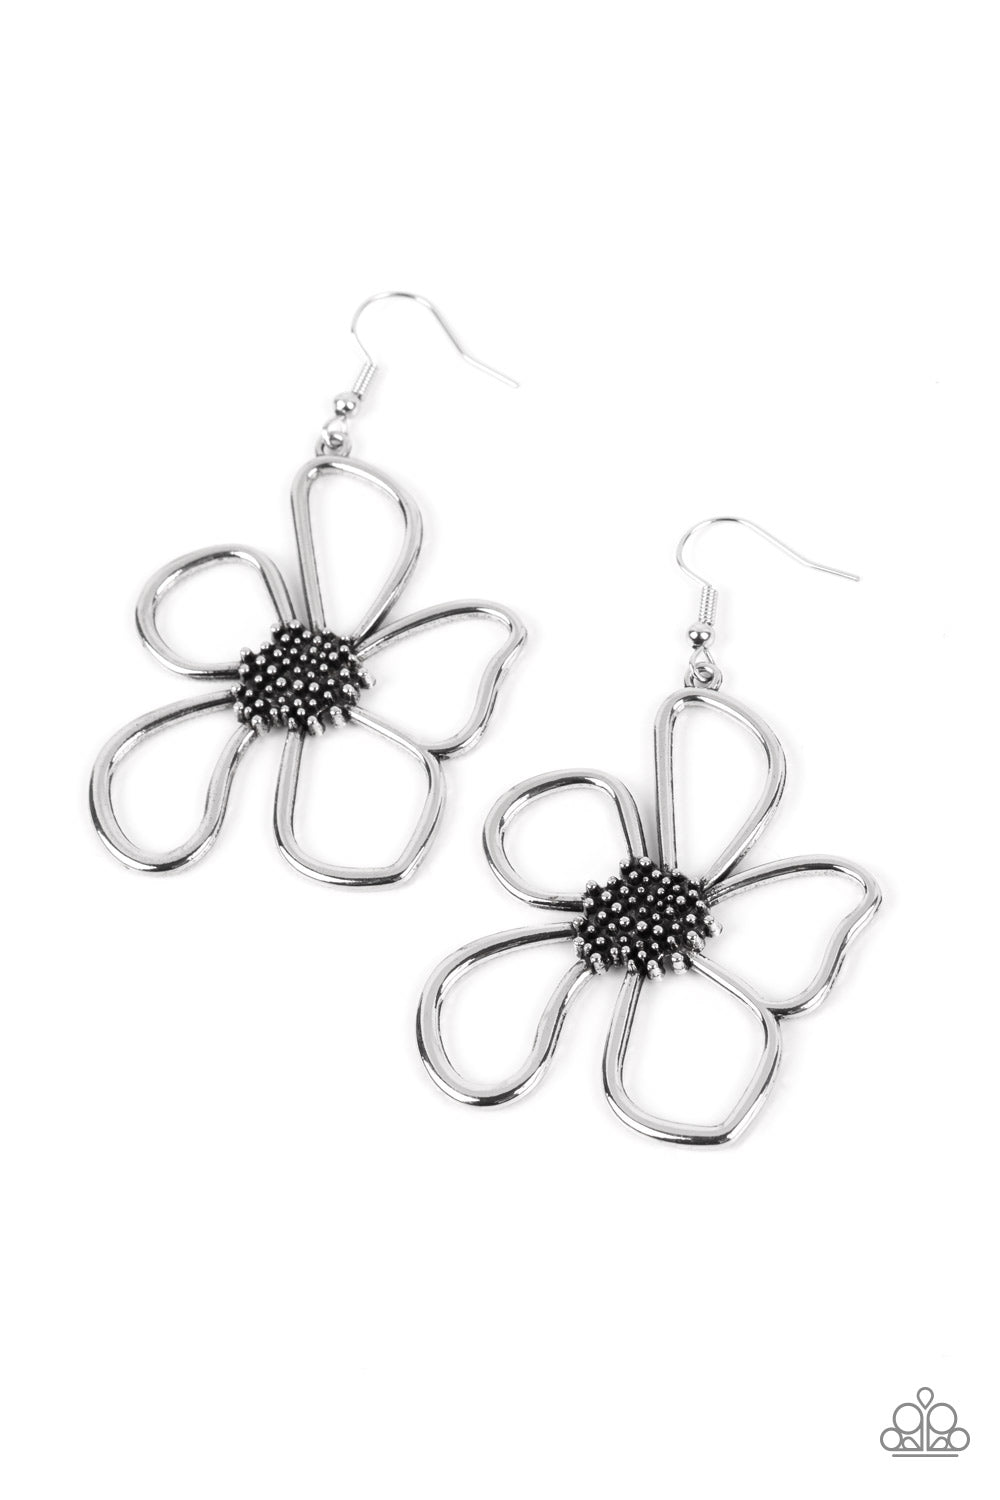 Wildflower Walkway - silver - Paparazzi earrings